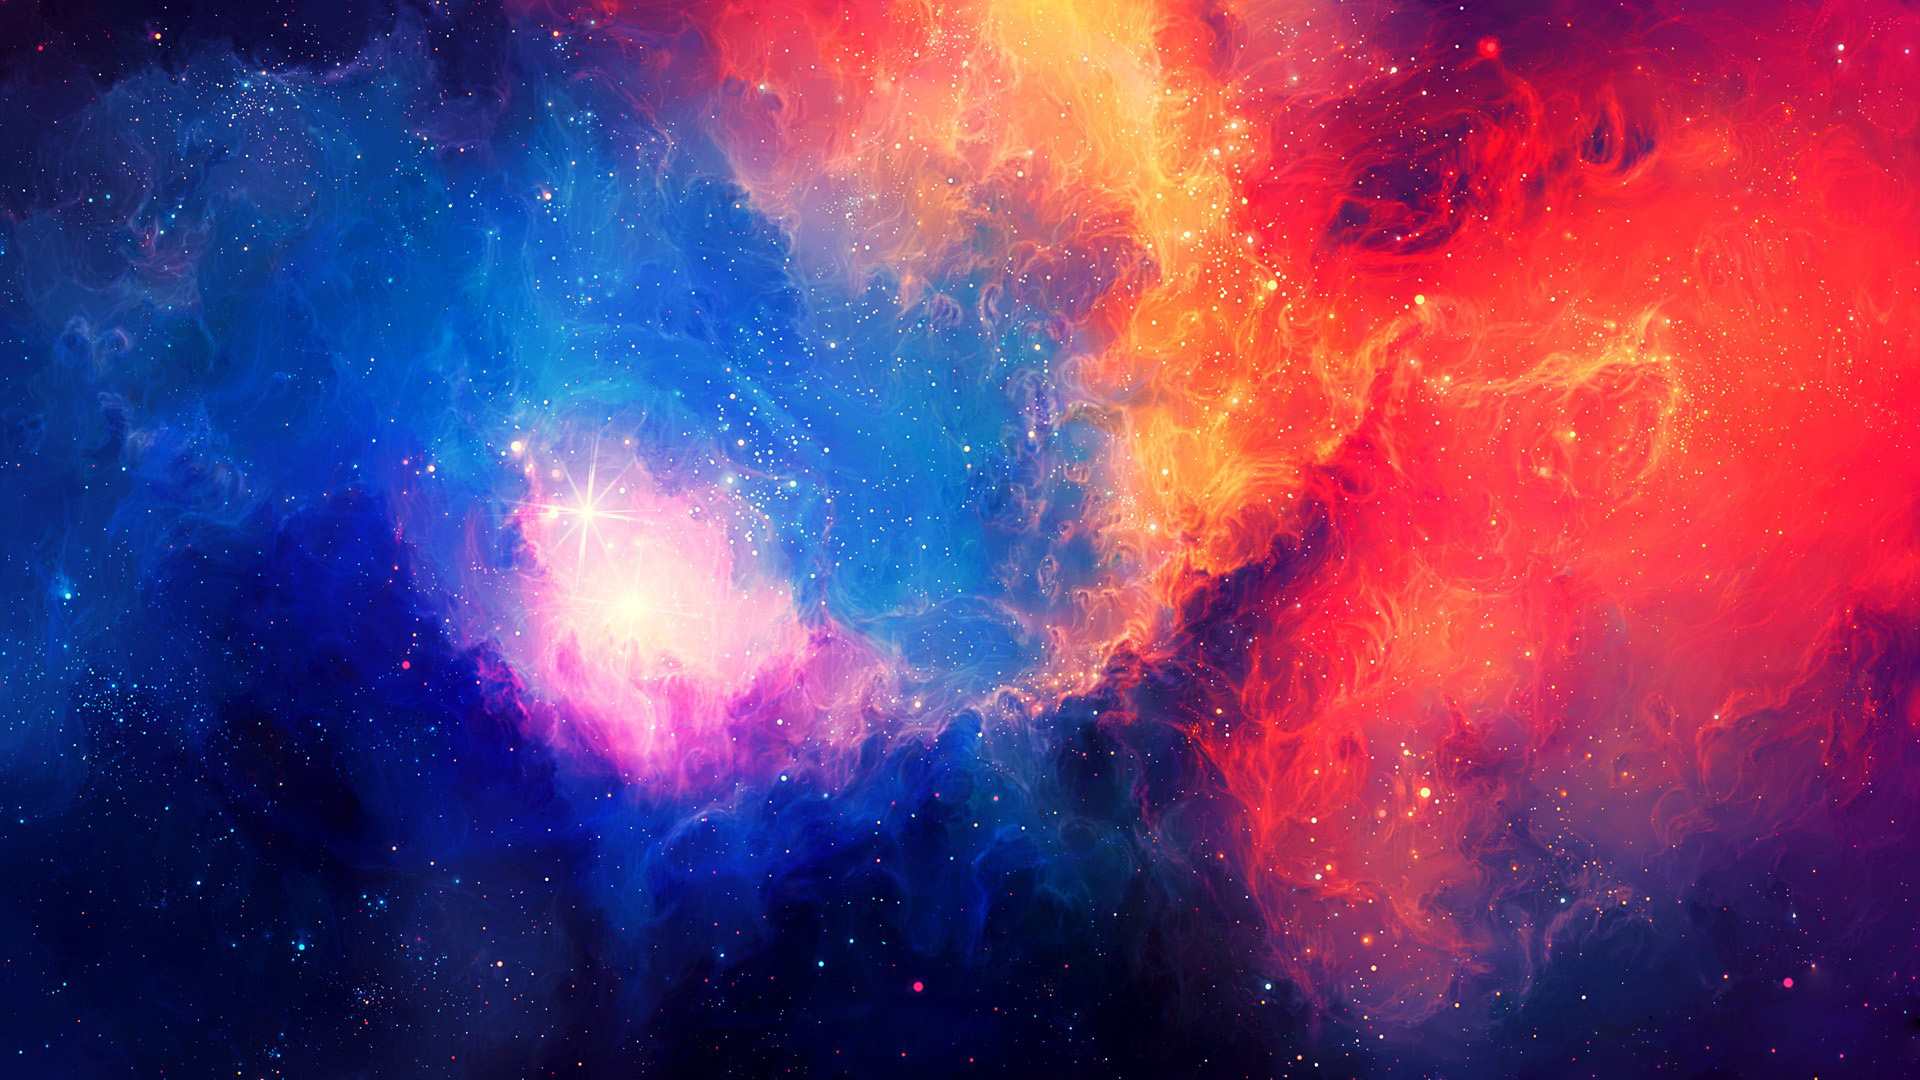 Colorful Galaxy Wallpaper Hd Pixelstalk Net